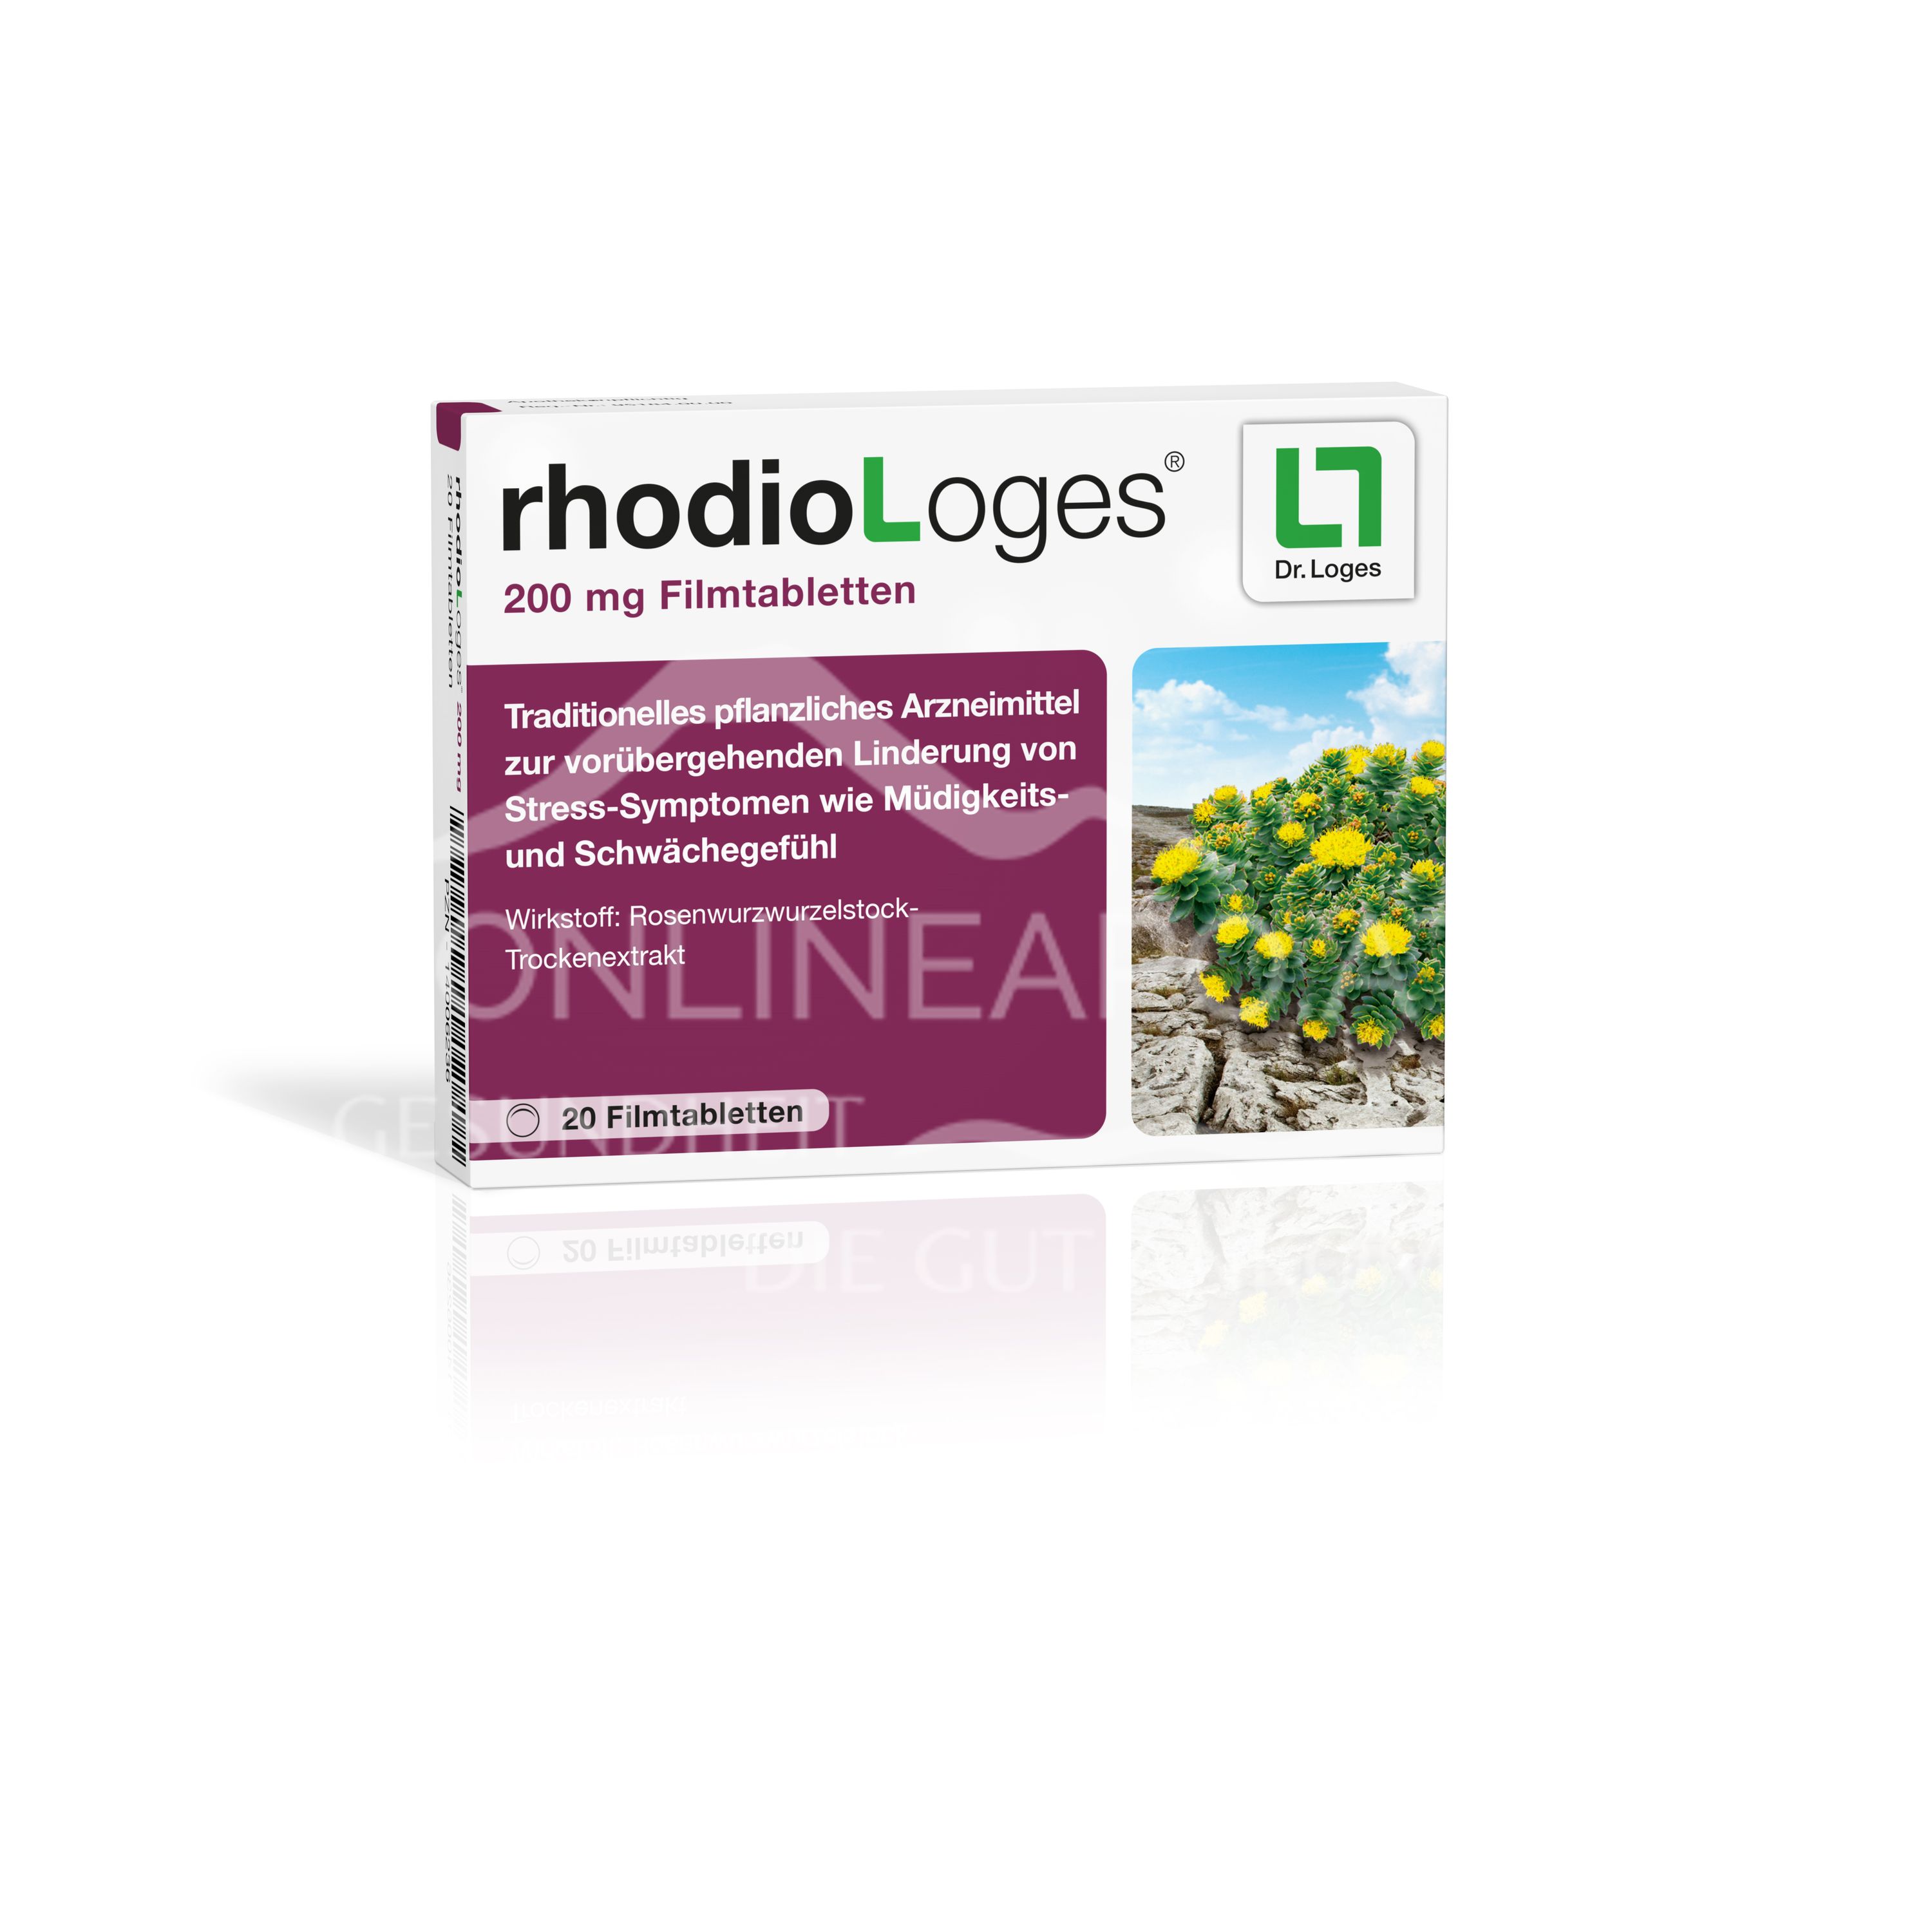 rhodioLoges® 200 mg Filmtabletten